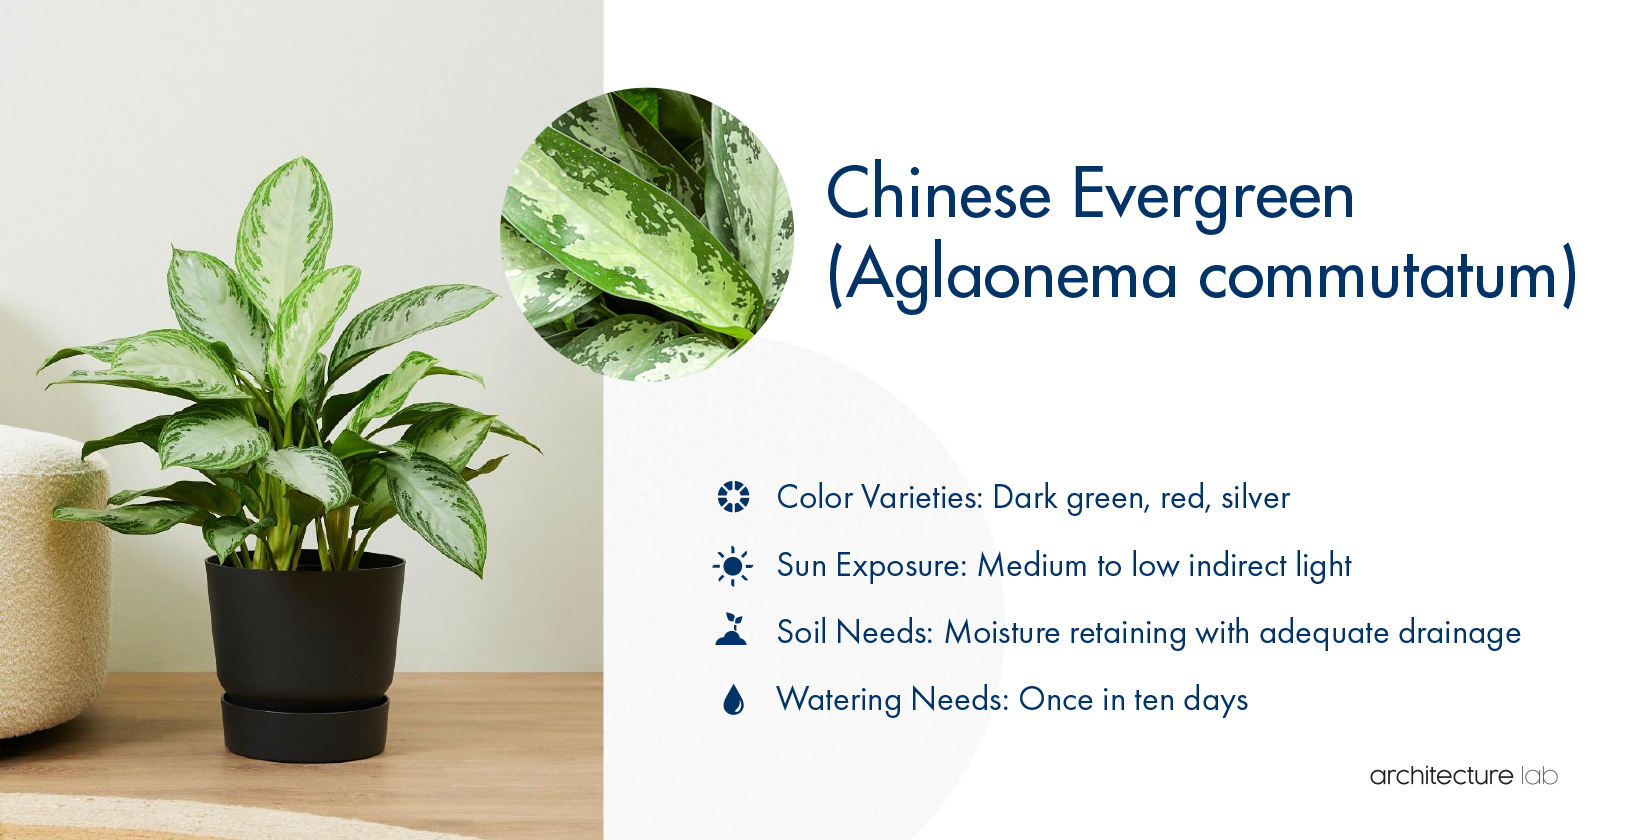 10. Chinese evergreen (aglaonema commutatum)